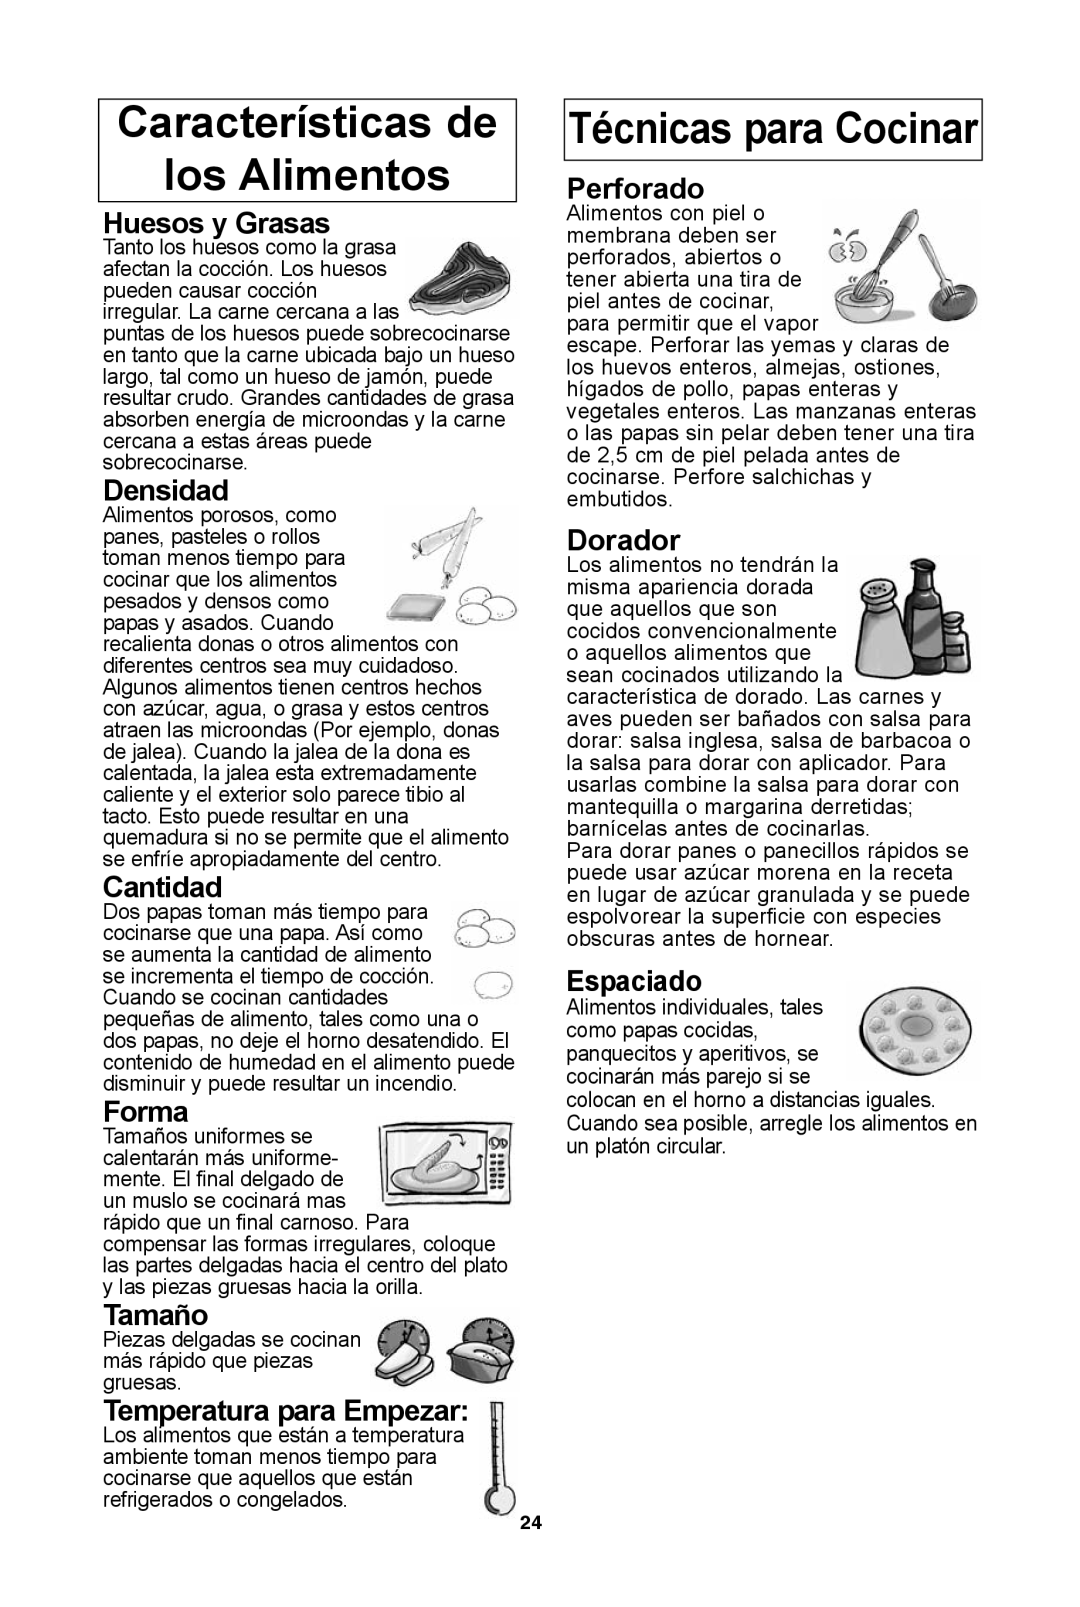 Panasonic NN-SD681S características de los alimentos, Técnicas para cocinar, Huesos y grasas, Densidad, cantidad, forma 